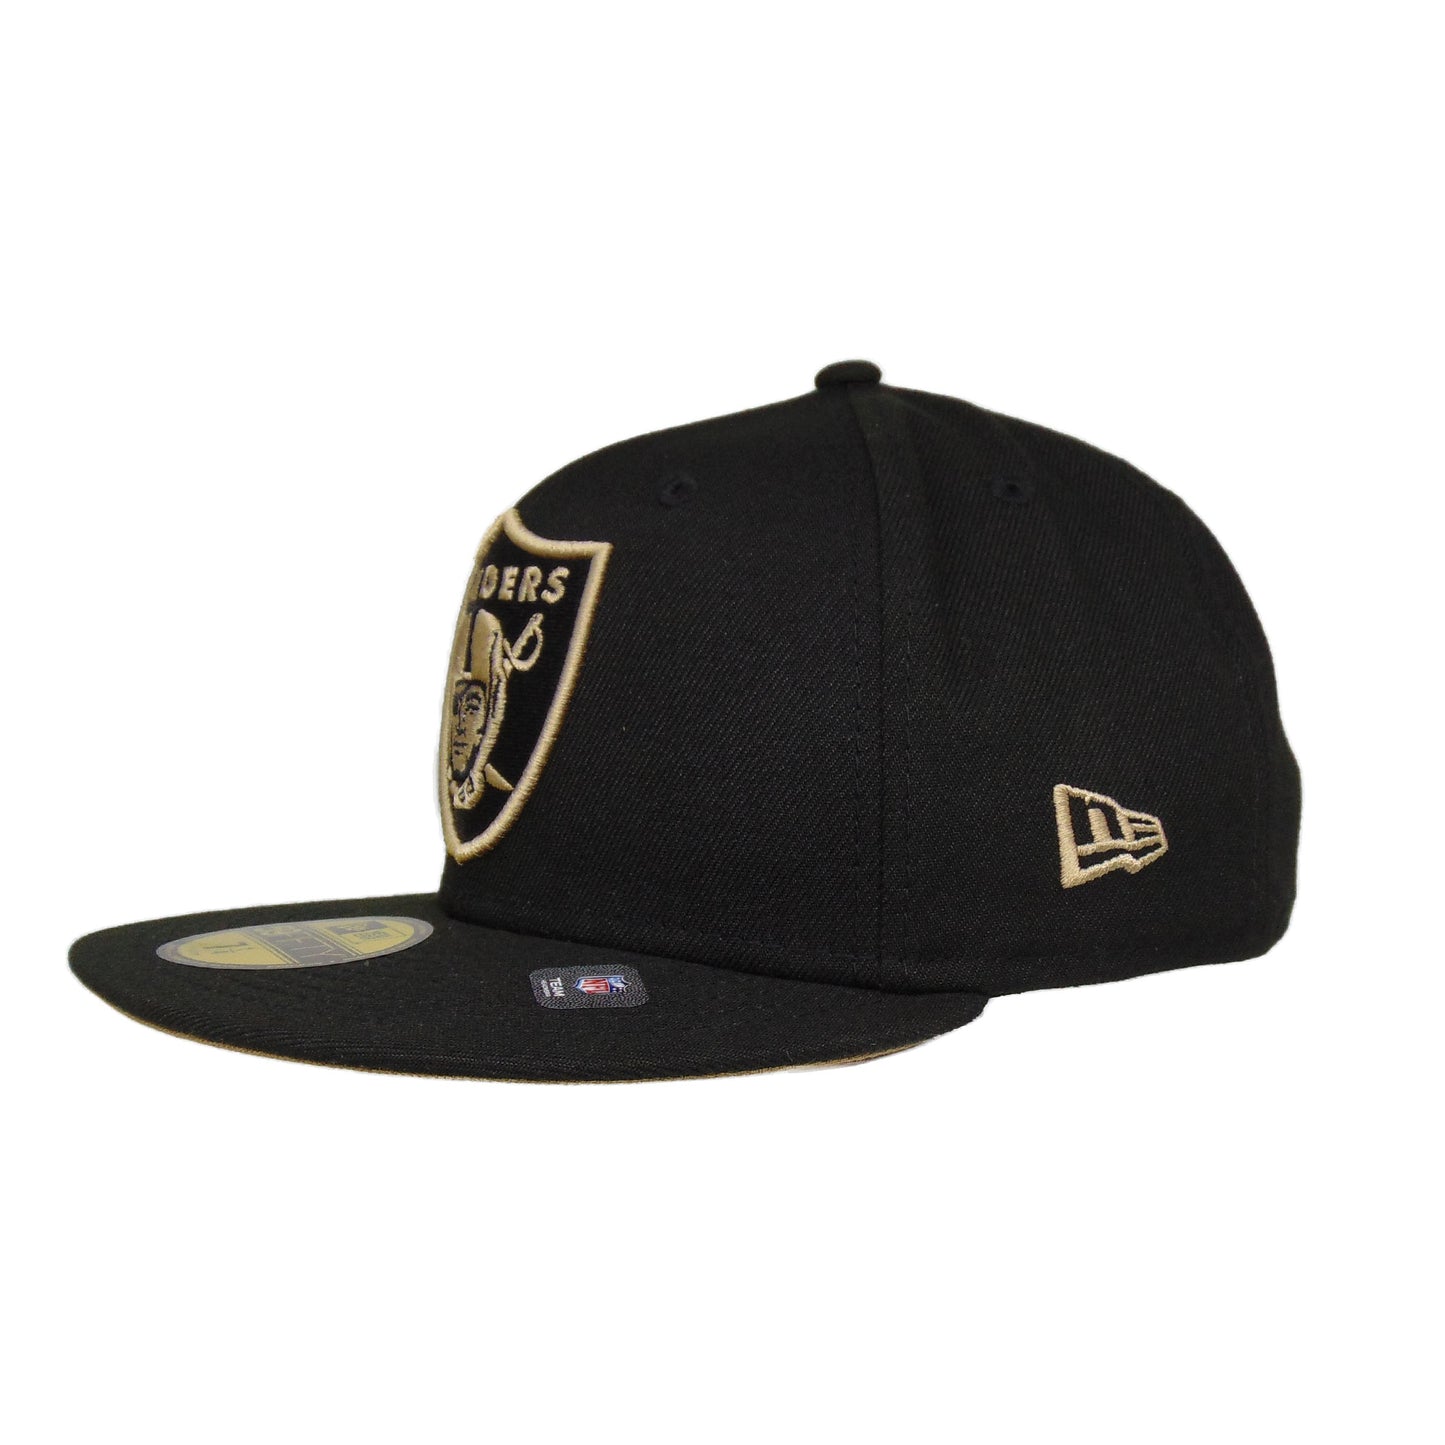 Las Vegas Raiders Custom New Era 59FIFTY Cap Black Khaki